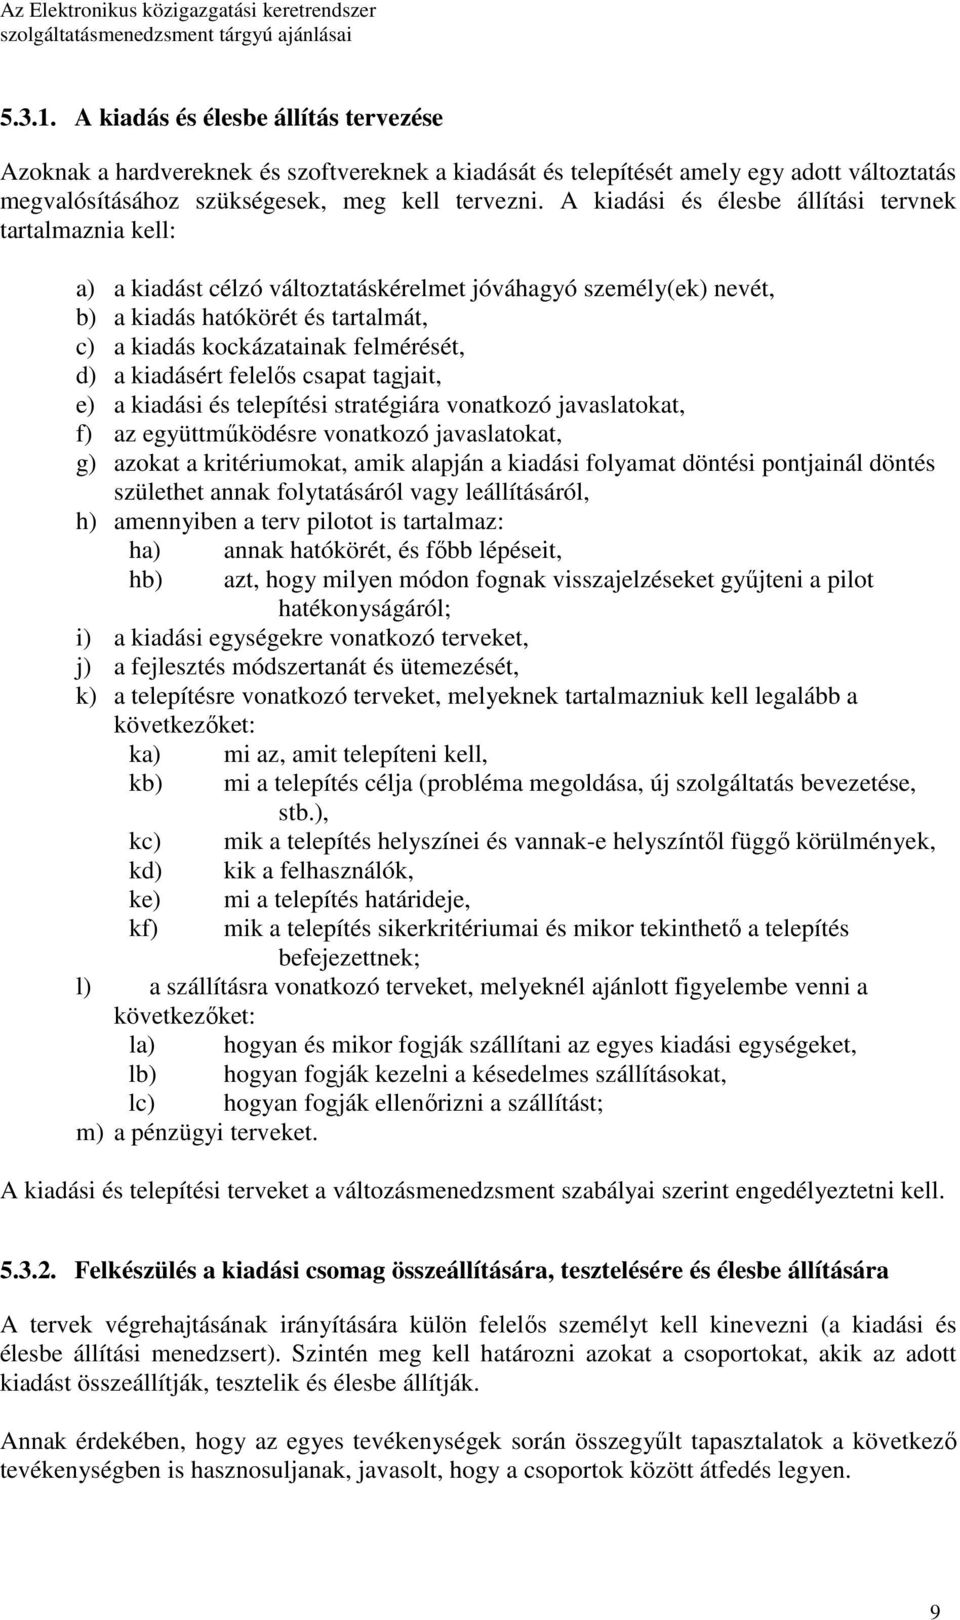 d) a kiadásért felelıs csapat tagjait, e) a kiadási és telepítési stratégiára vonatkozó javaslatokat, f) az együttmőködésre vonatkozó javaslatokat, g) azokat a kritériumokat, amik alapján a kiadási